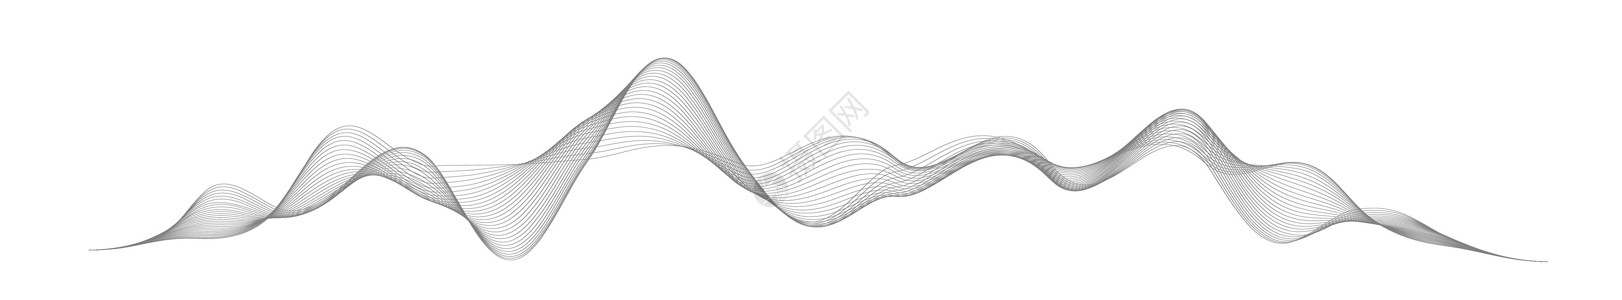 在白色背景上的抽象风格的声波 抽象数字信号波线 矢量音乐语音振动歌曲波形数字频谱音频脉冲和波形频率均衡器图表韵律嗓音空闲仪表信号图片